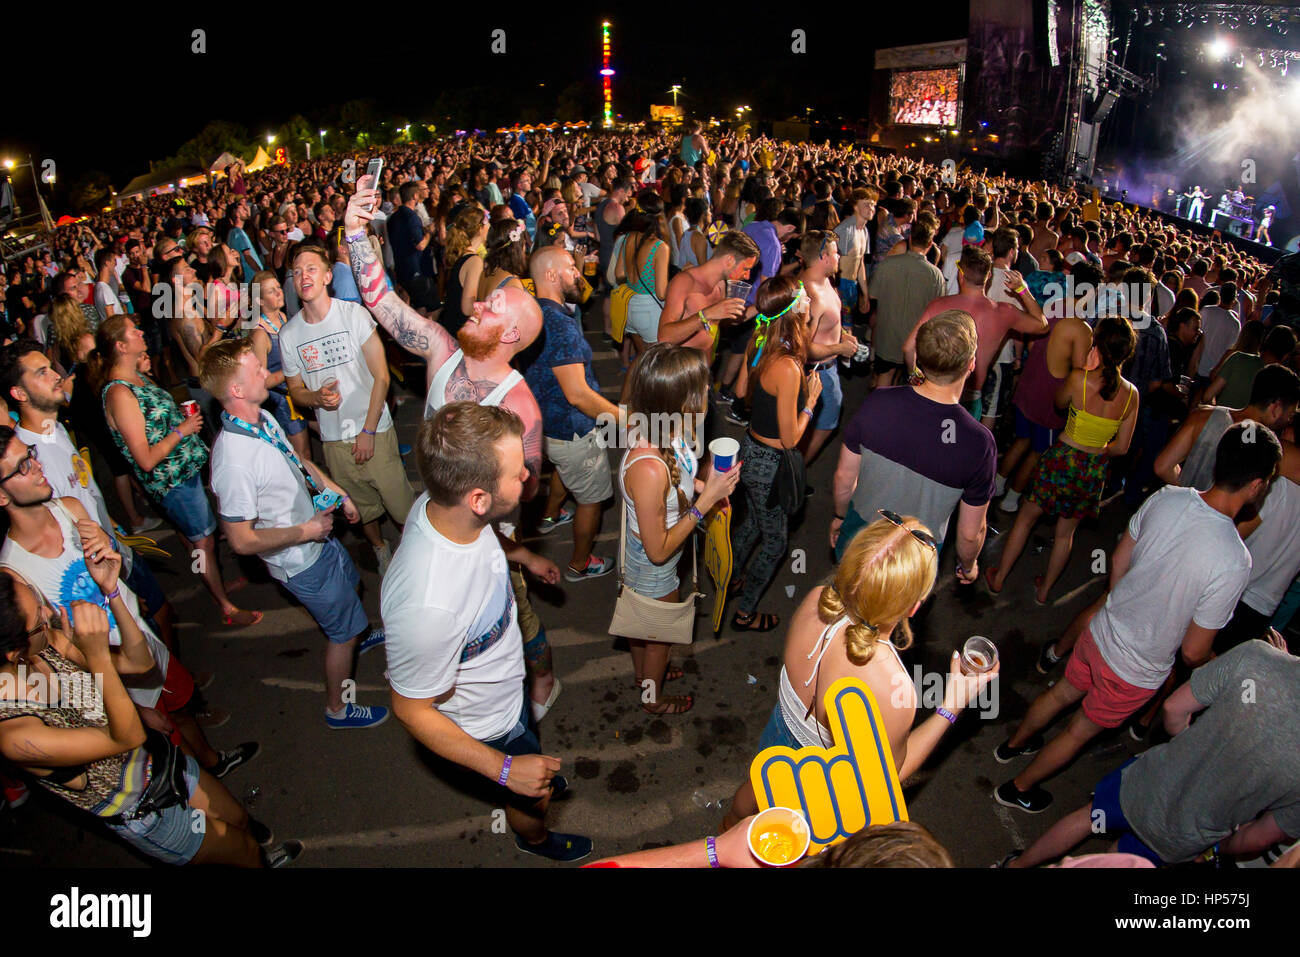 BENICASSIM, Spagna - Lug 16: la folla in un concerto presso la FIB Festival il 16 luglio 2015 a Benicassim, Spagna. Foto Stock